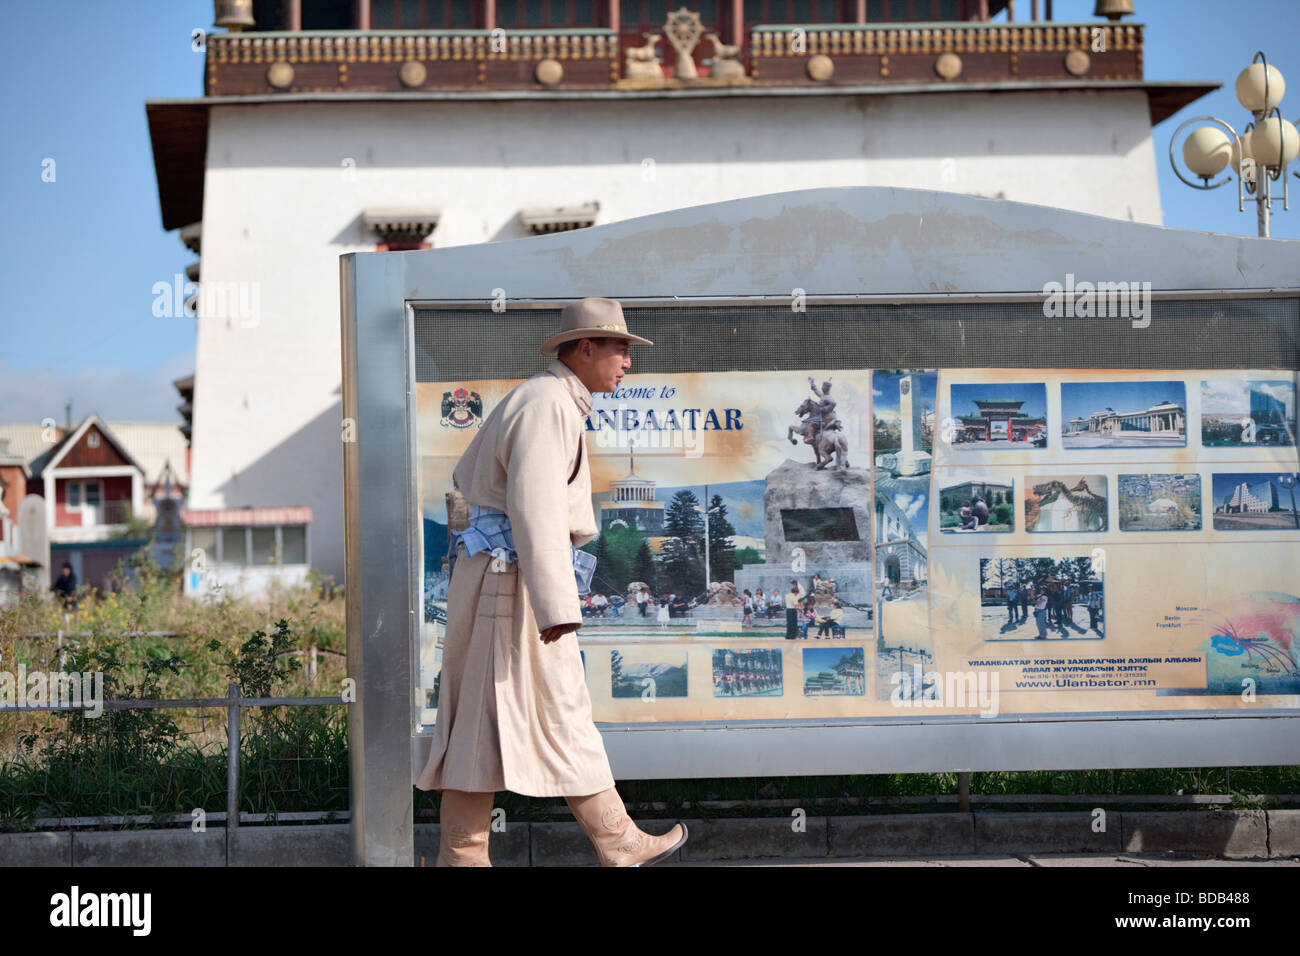 Bien-habillés cowboy mongole de géant passé un 'Bienvenue à Oulan-bator' signe, Oulan-Bator, Mongolie Banque D'Images